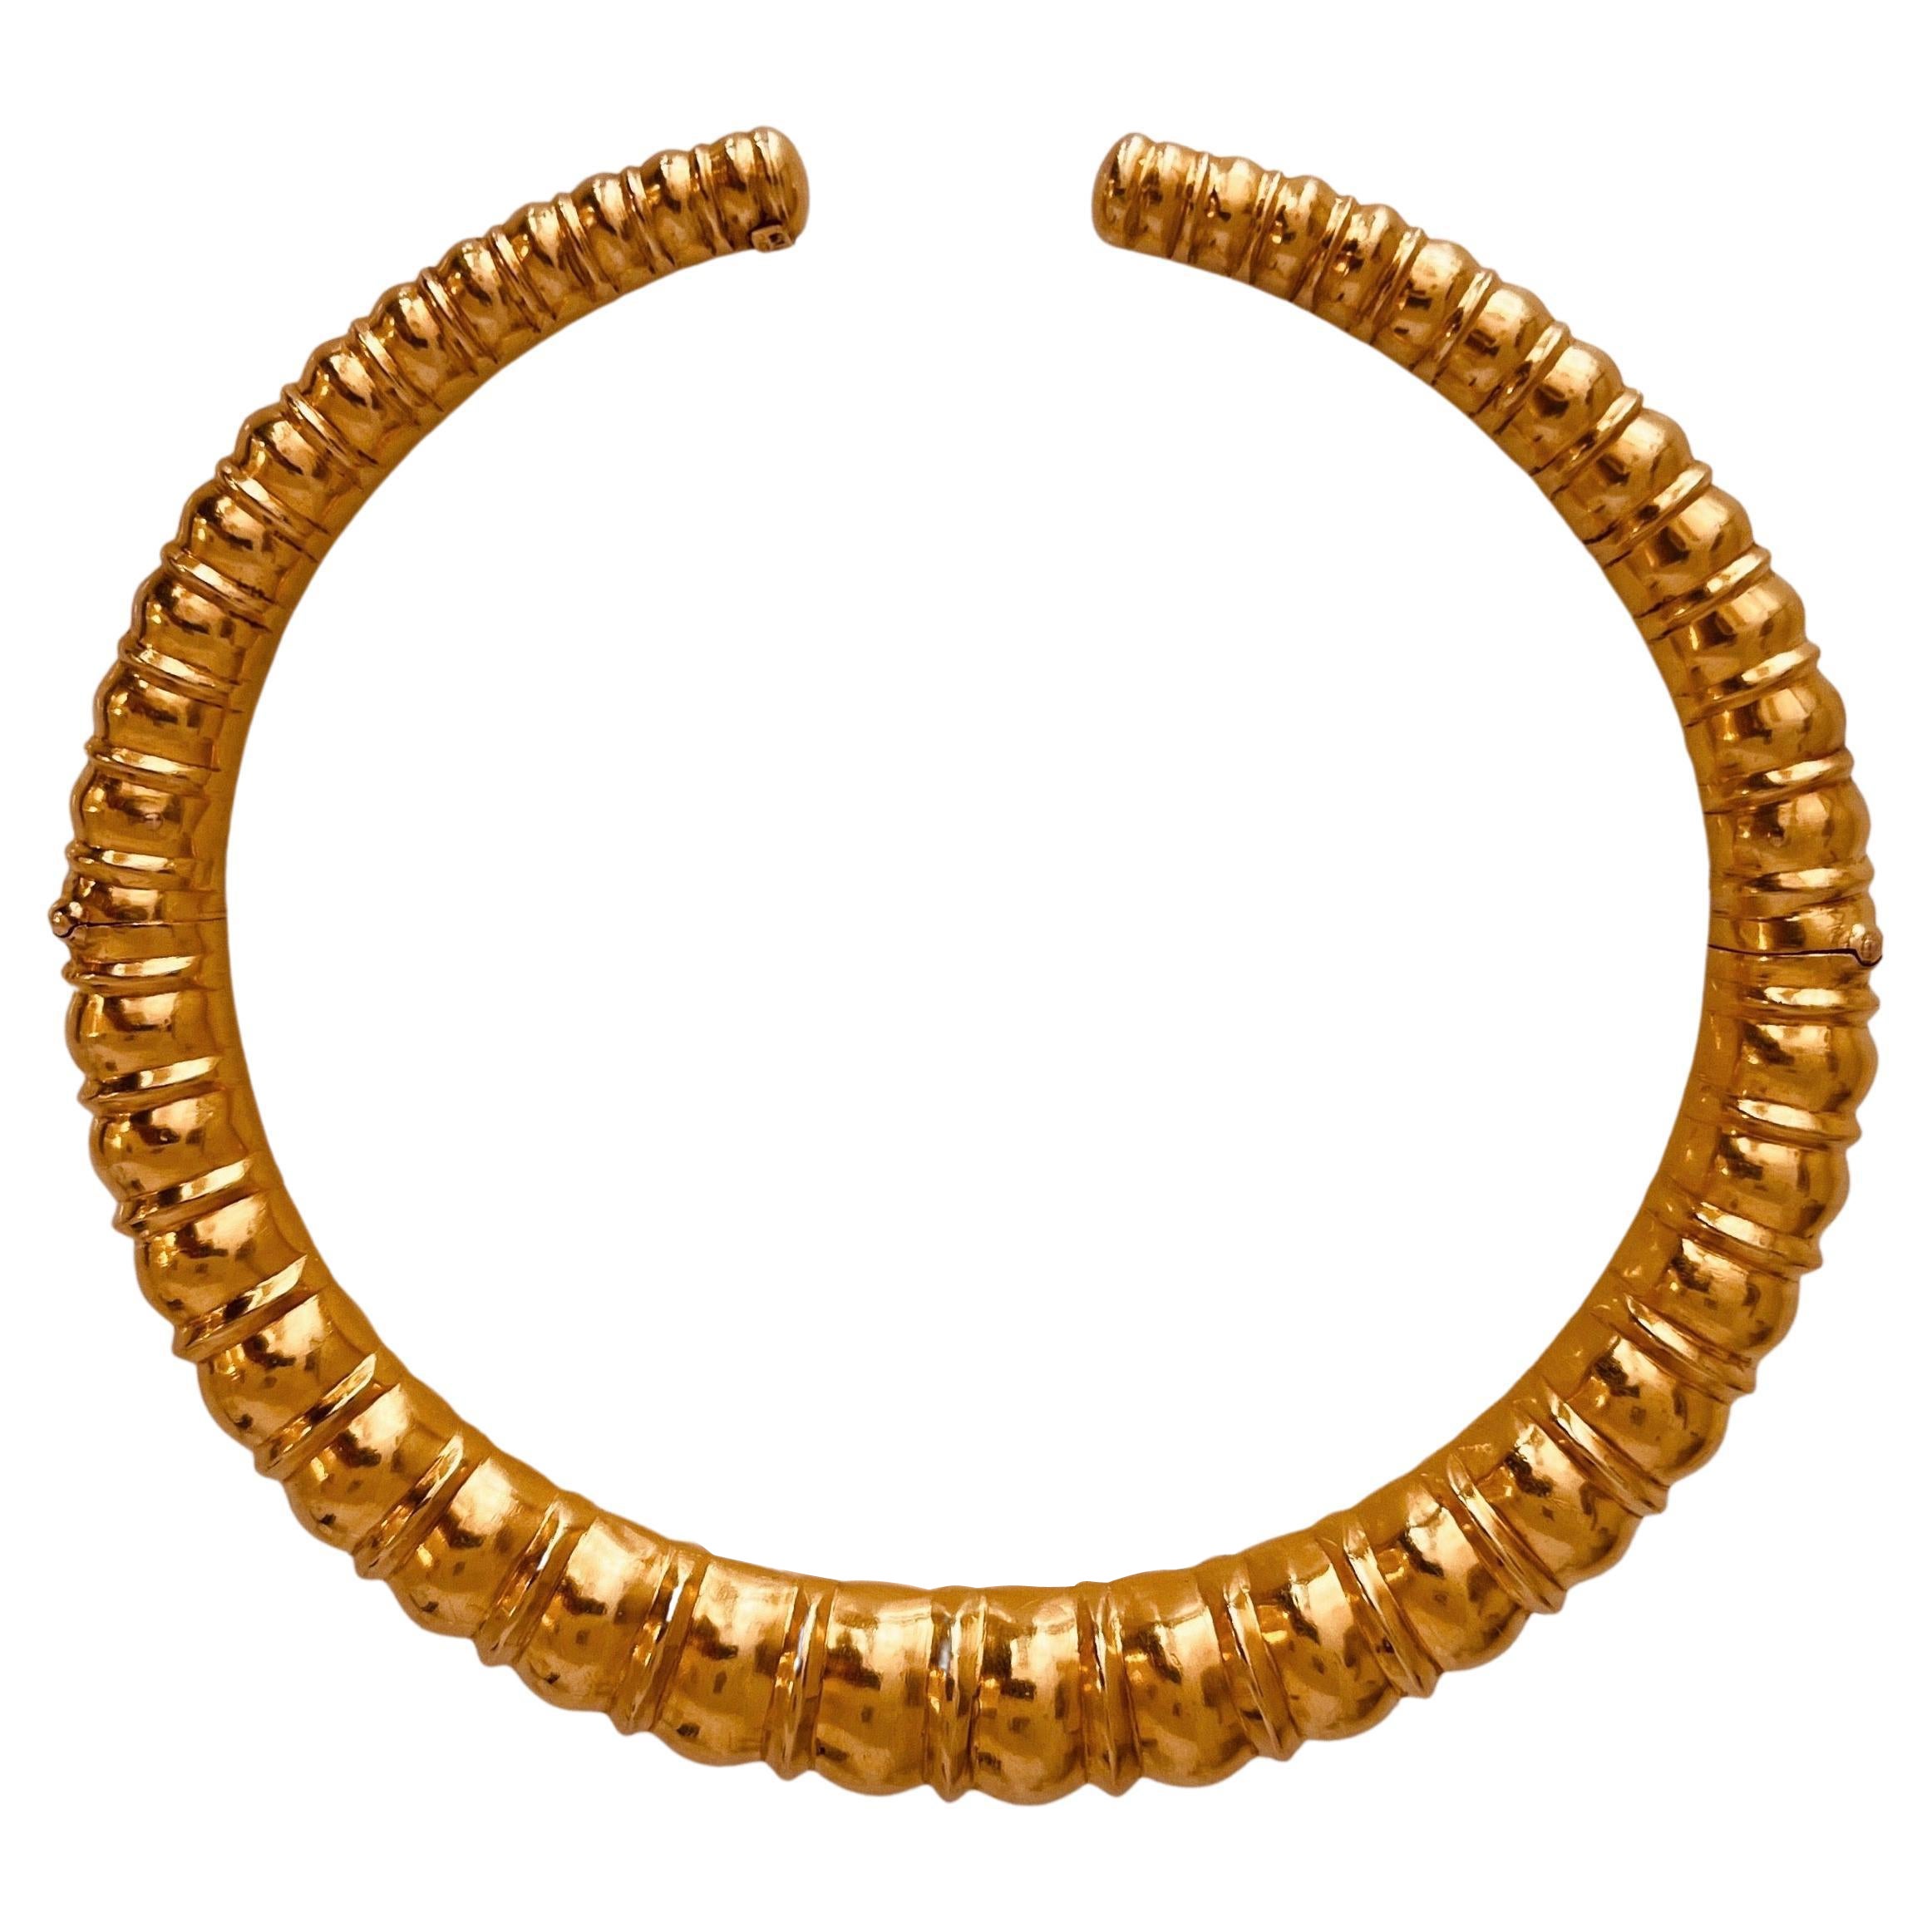 Eine hochkarätige Goldkette mit abgestuftem, abgerundetem Rippendesign, inspiriert von der mykenischen Periode. Halskette aus 20-22 Karat Gold. 34 cm Innenumfang. Gewicht: 102,2 Gramm. Ca. 1970er Jahre. Punzierungen: Herstellerzeichen und signiert.